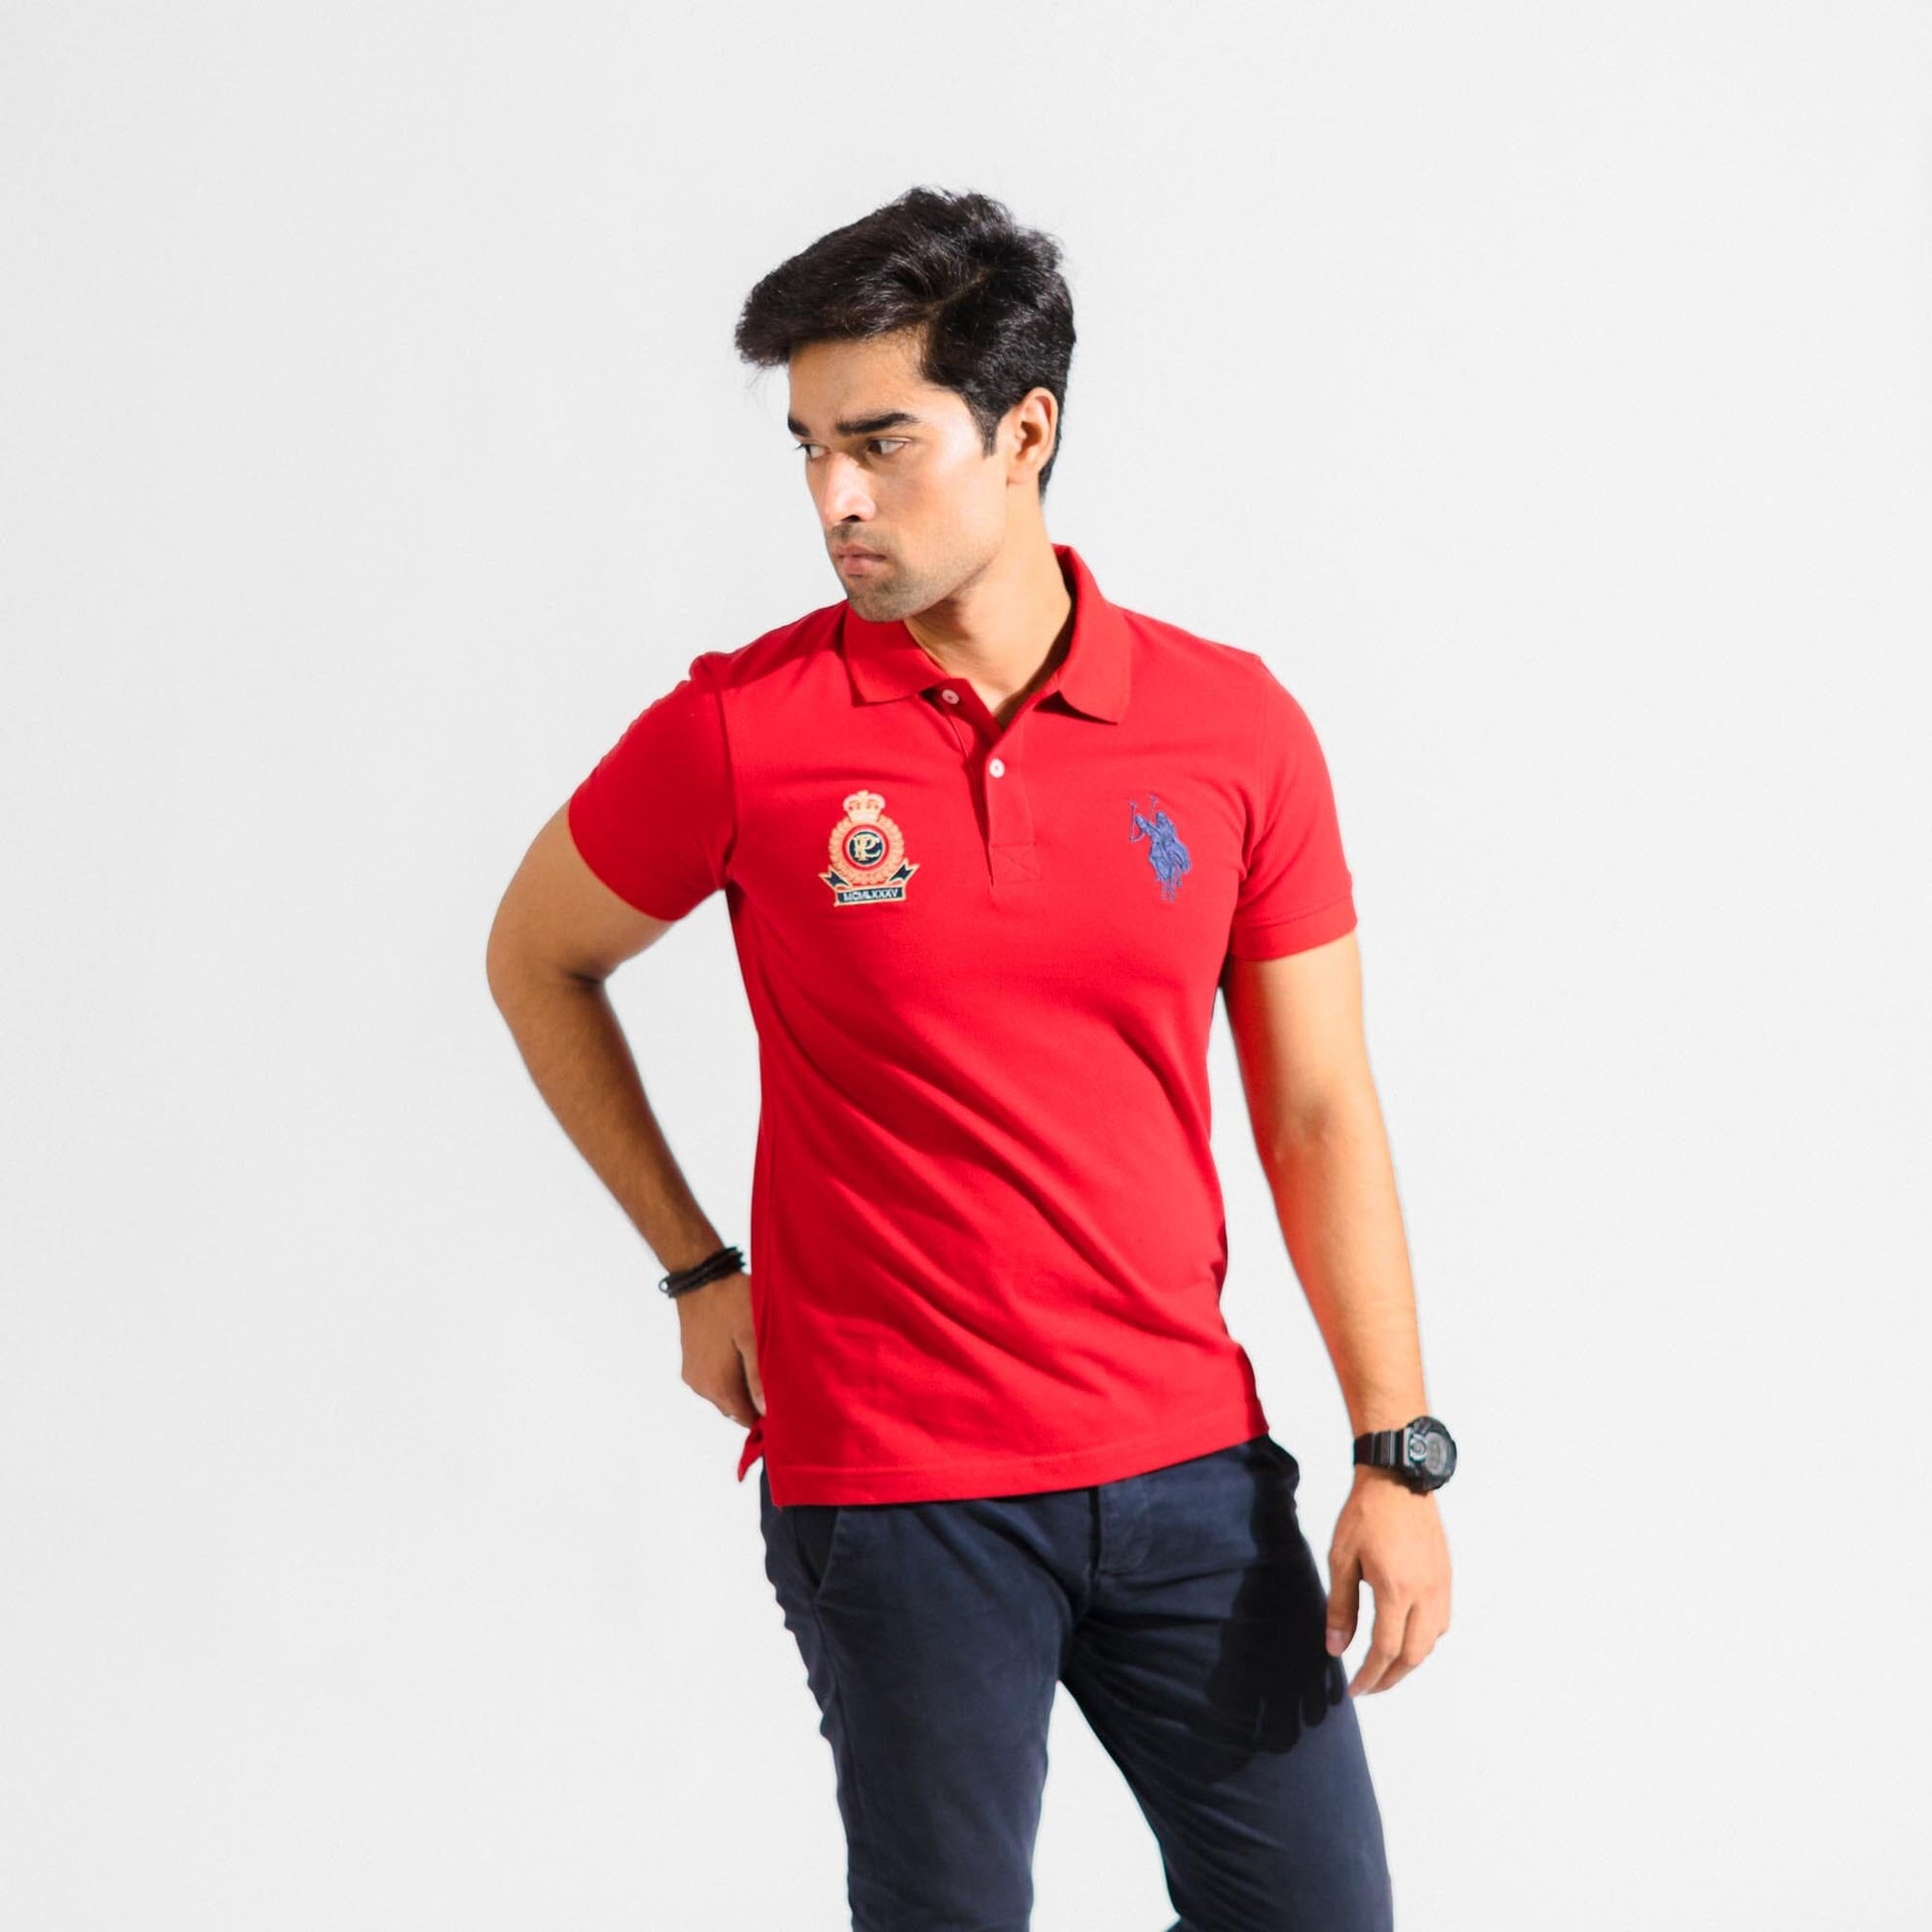 Polo Republica Men's 2 Pony Rider & Crest Embroidered Short Sleeve Polo Shirt Men's Polo Shirt Polo Republica Red S 